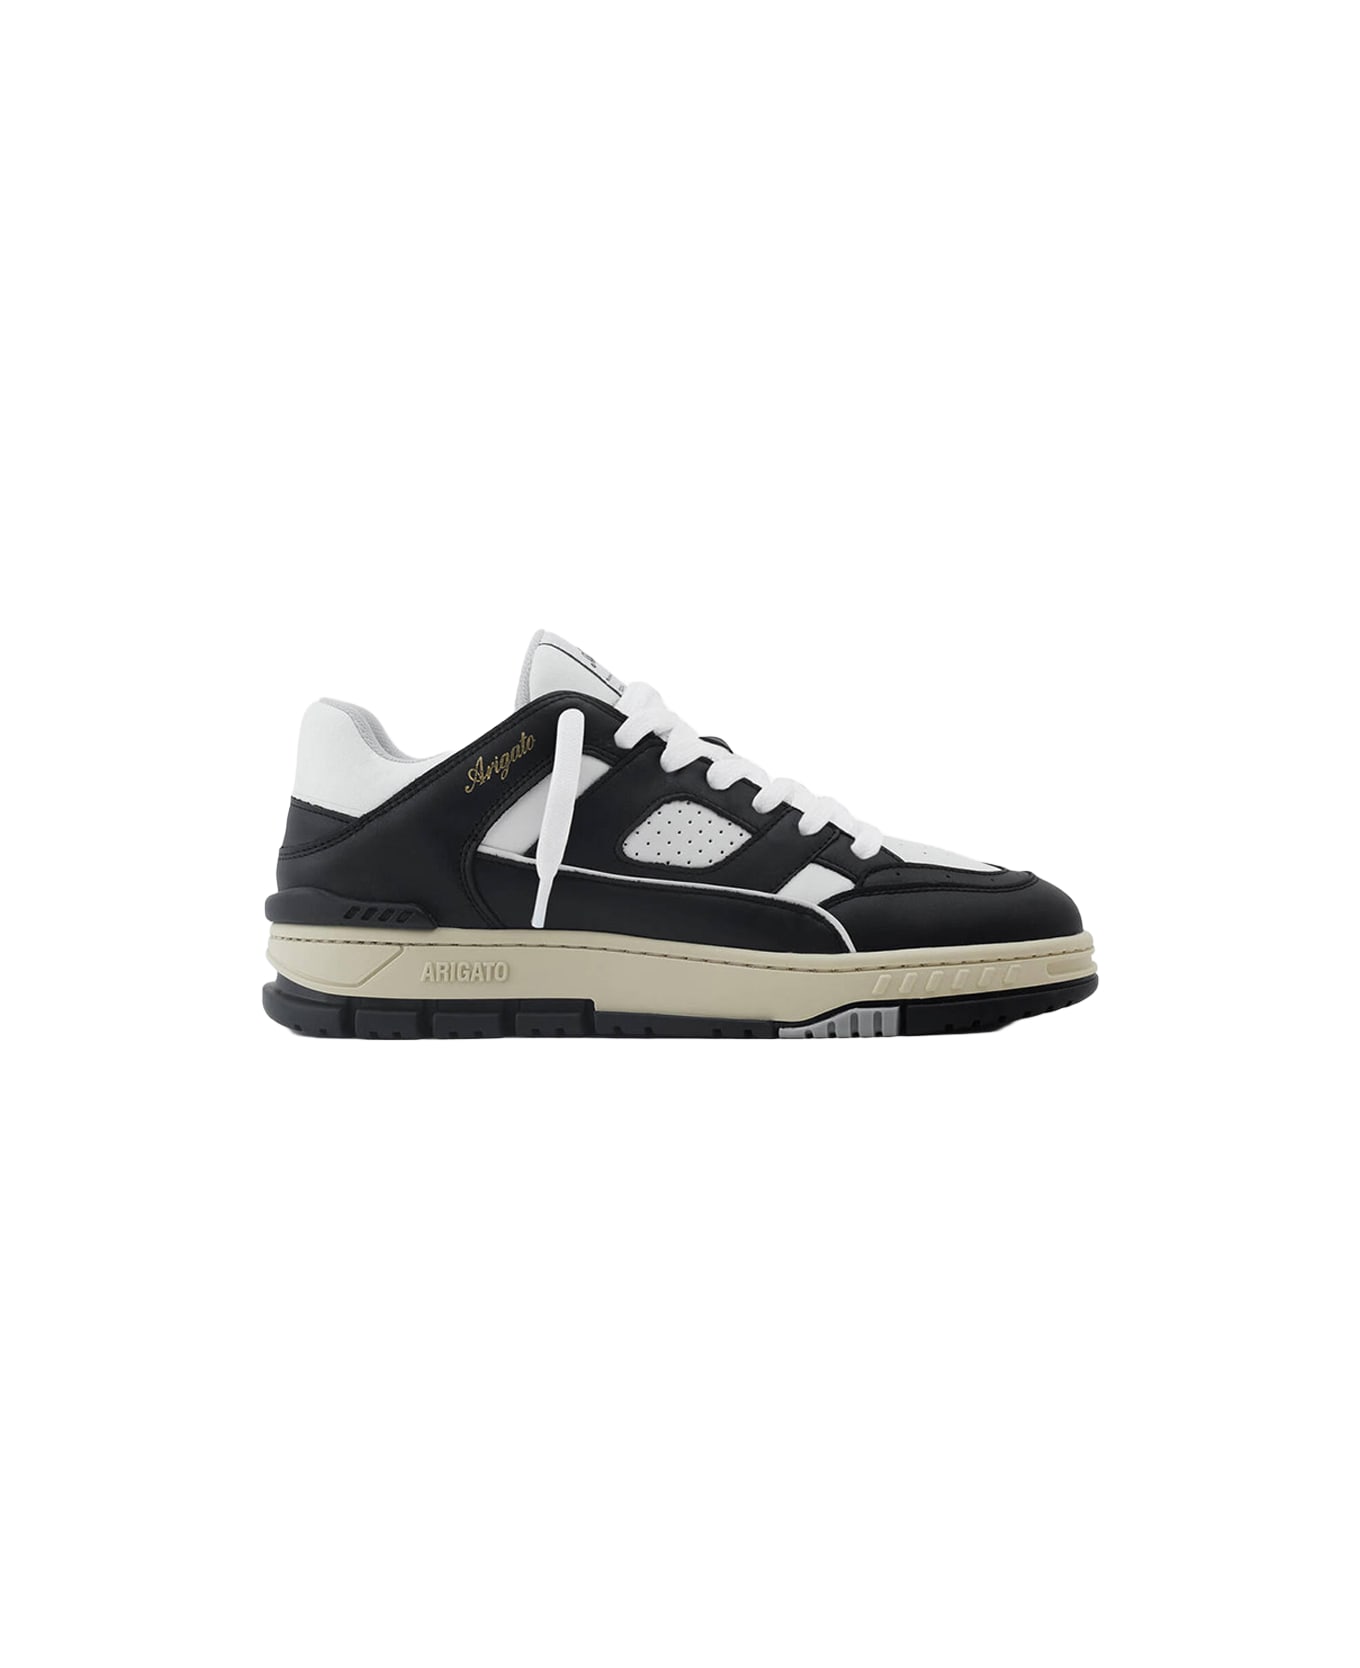 Axel Arigato Area Lo Sneaker Black and white leather lace-up low sneaker - Area Lo sneaker - Bianco/nero